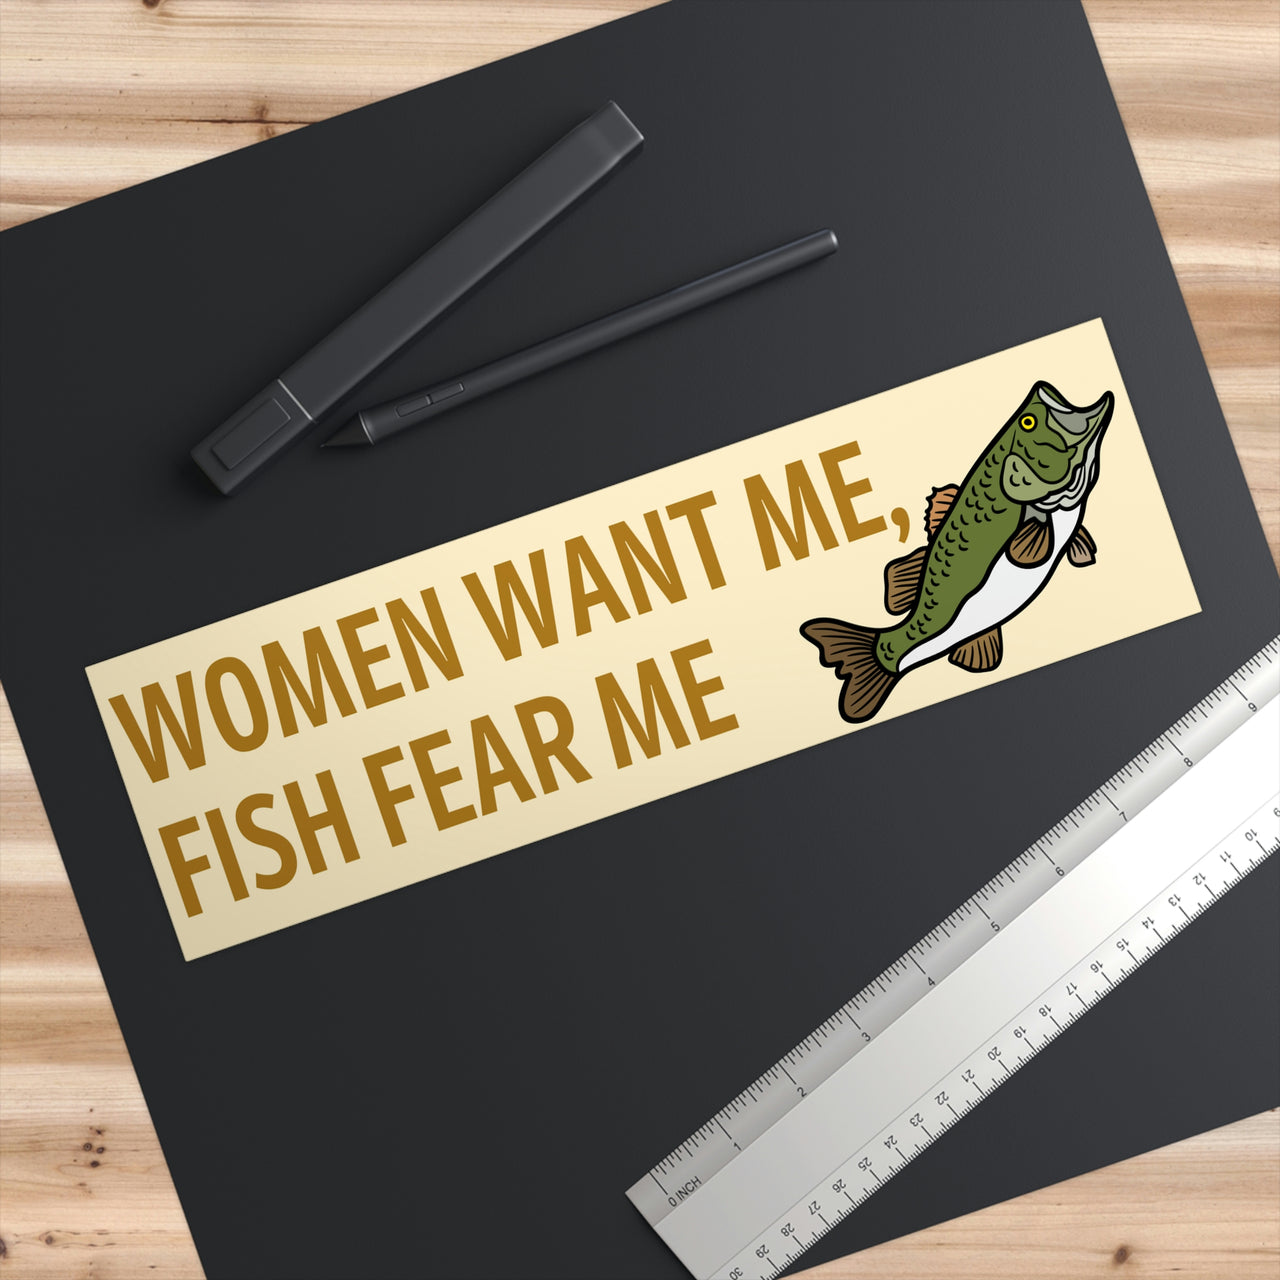 Women Want Me Fish Fear Me Bumper Sticker